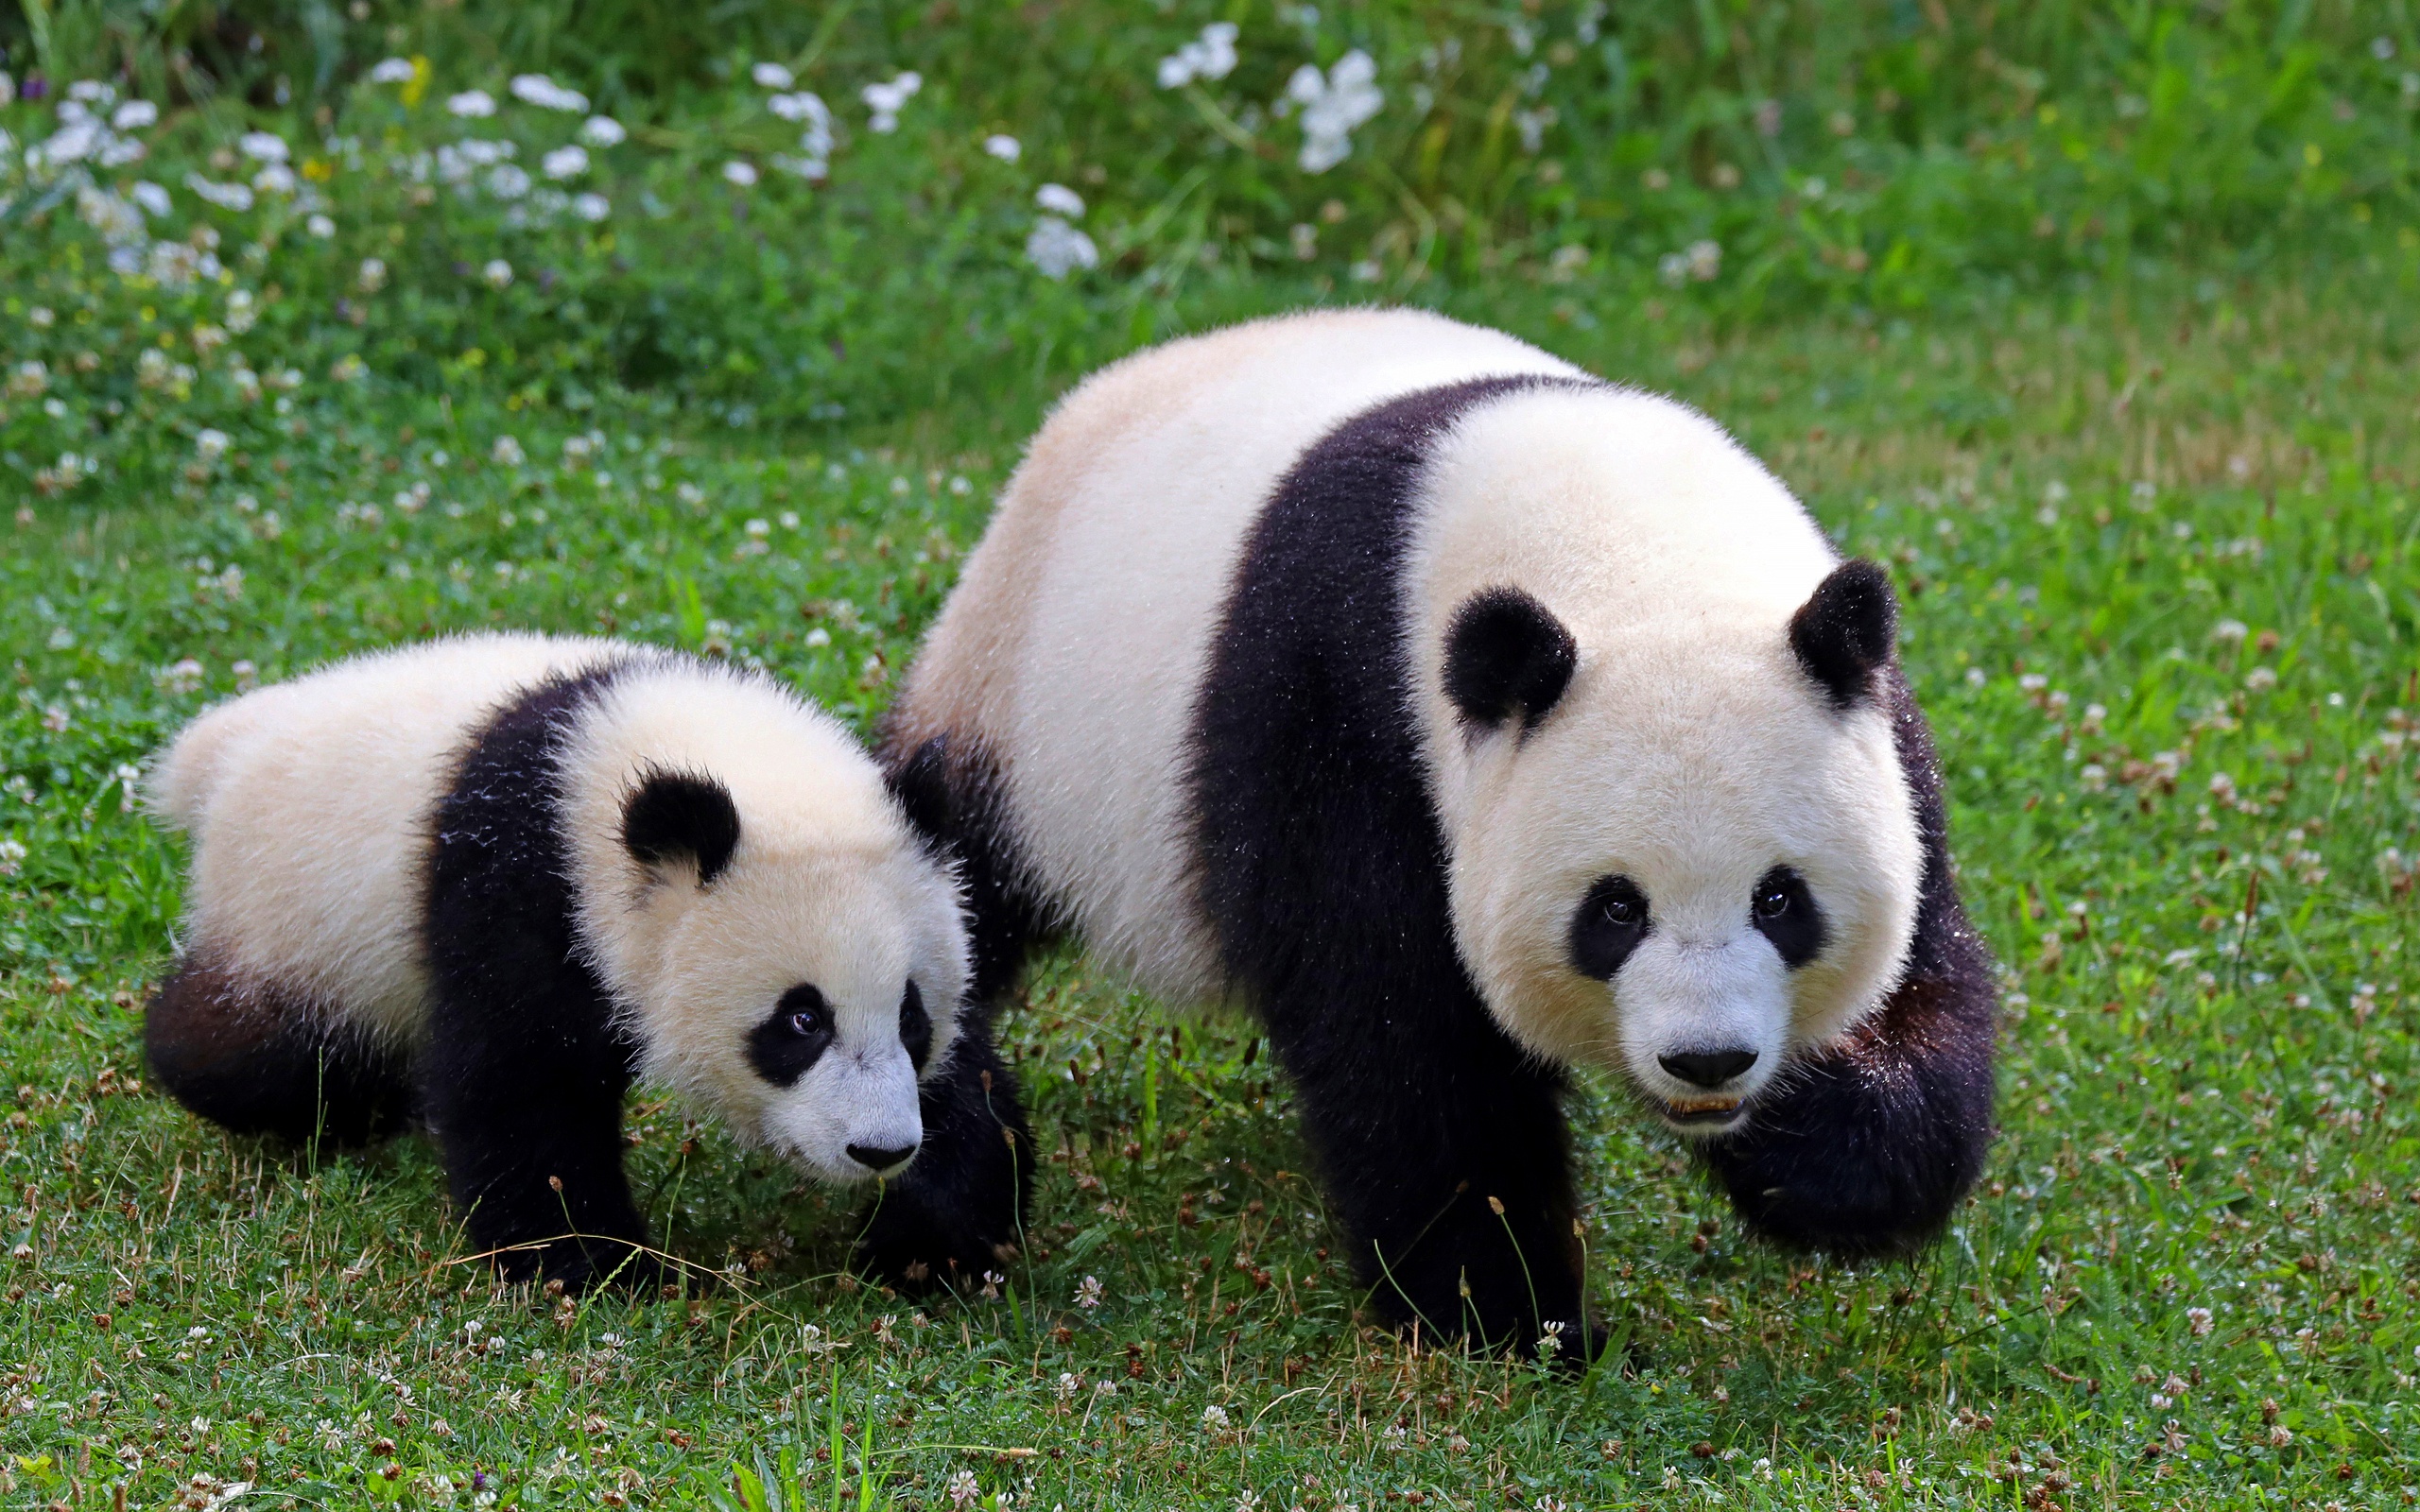 Две панды